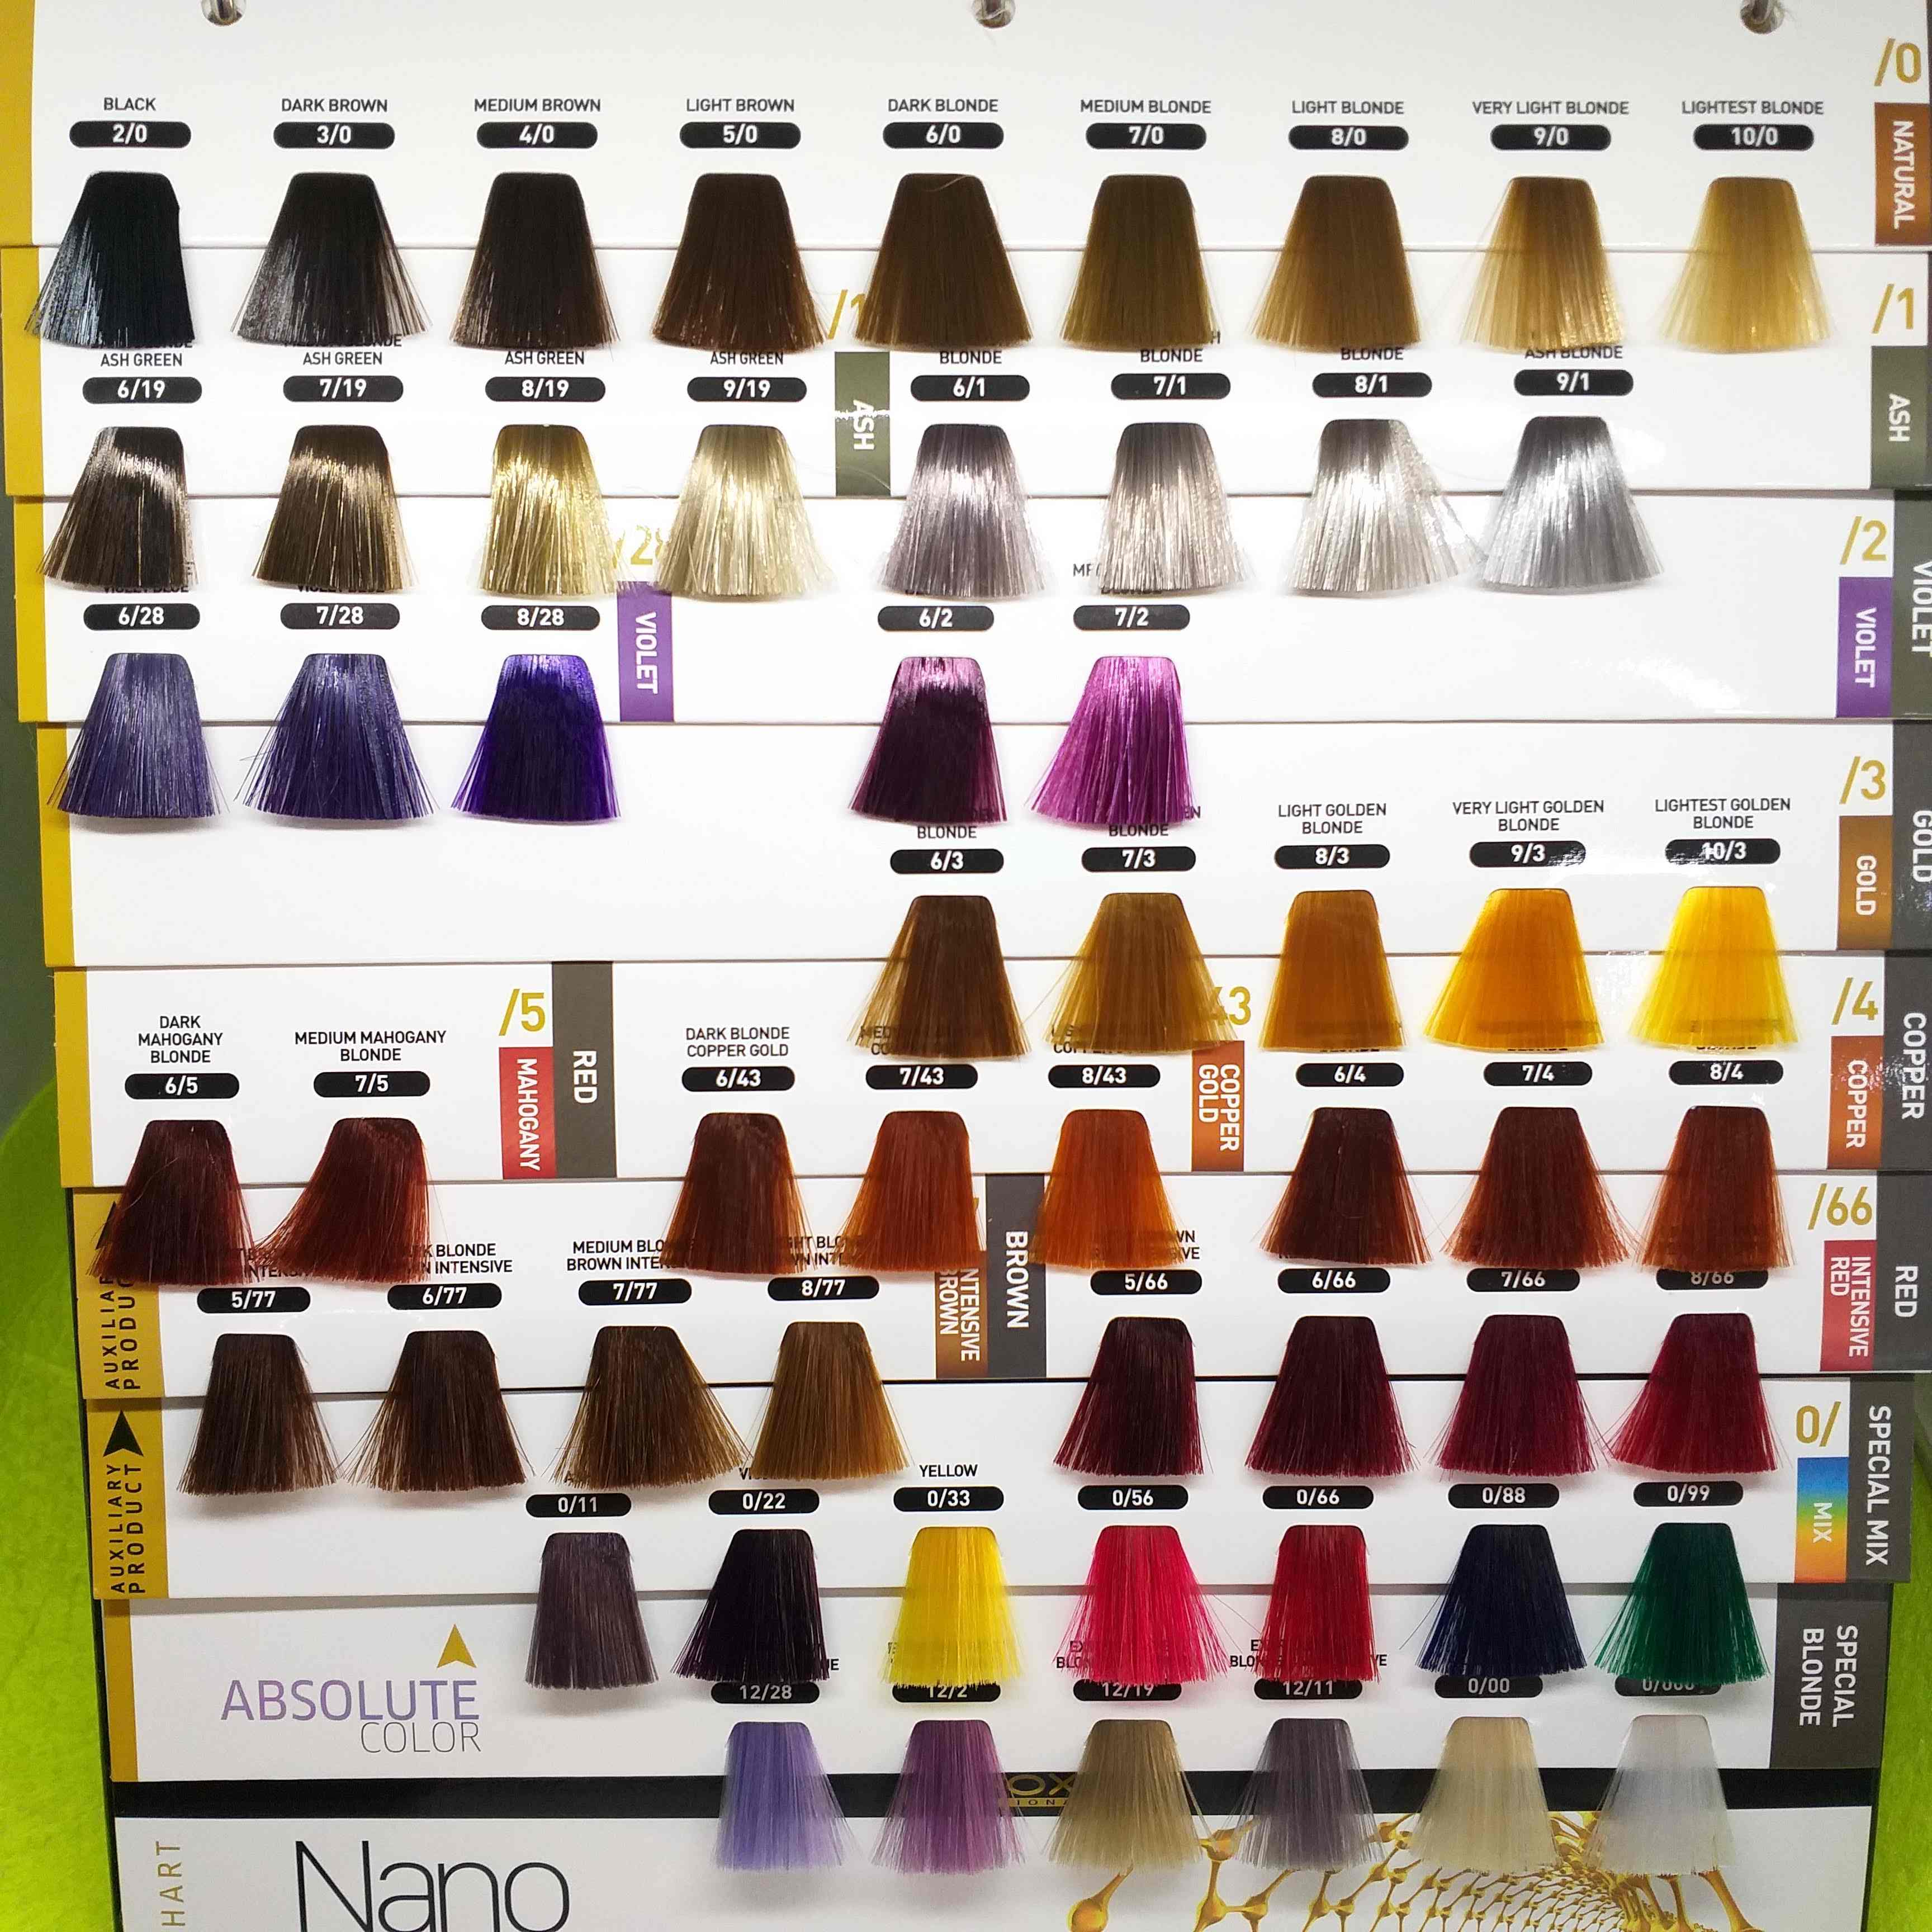 Bảng màu nhuộm tóc: Bạn đang tìm kiếm một bảng màu nhuộm tóc đa dạng để chọn lựa cho kiểu tóc của mình? Không cần phải tìm kiếm nữa, bởi chúng tôi cung cấp cho bạn những bảng màu nhuộm tóc phong phú, đa dạng và hoàn toàn đáng để thử qua.